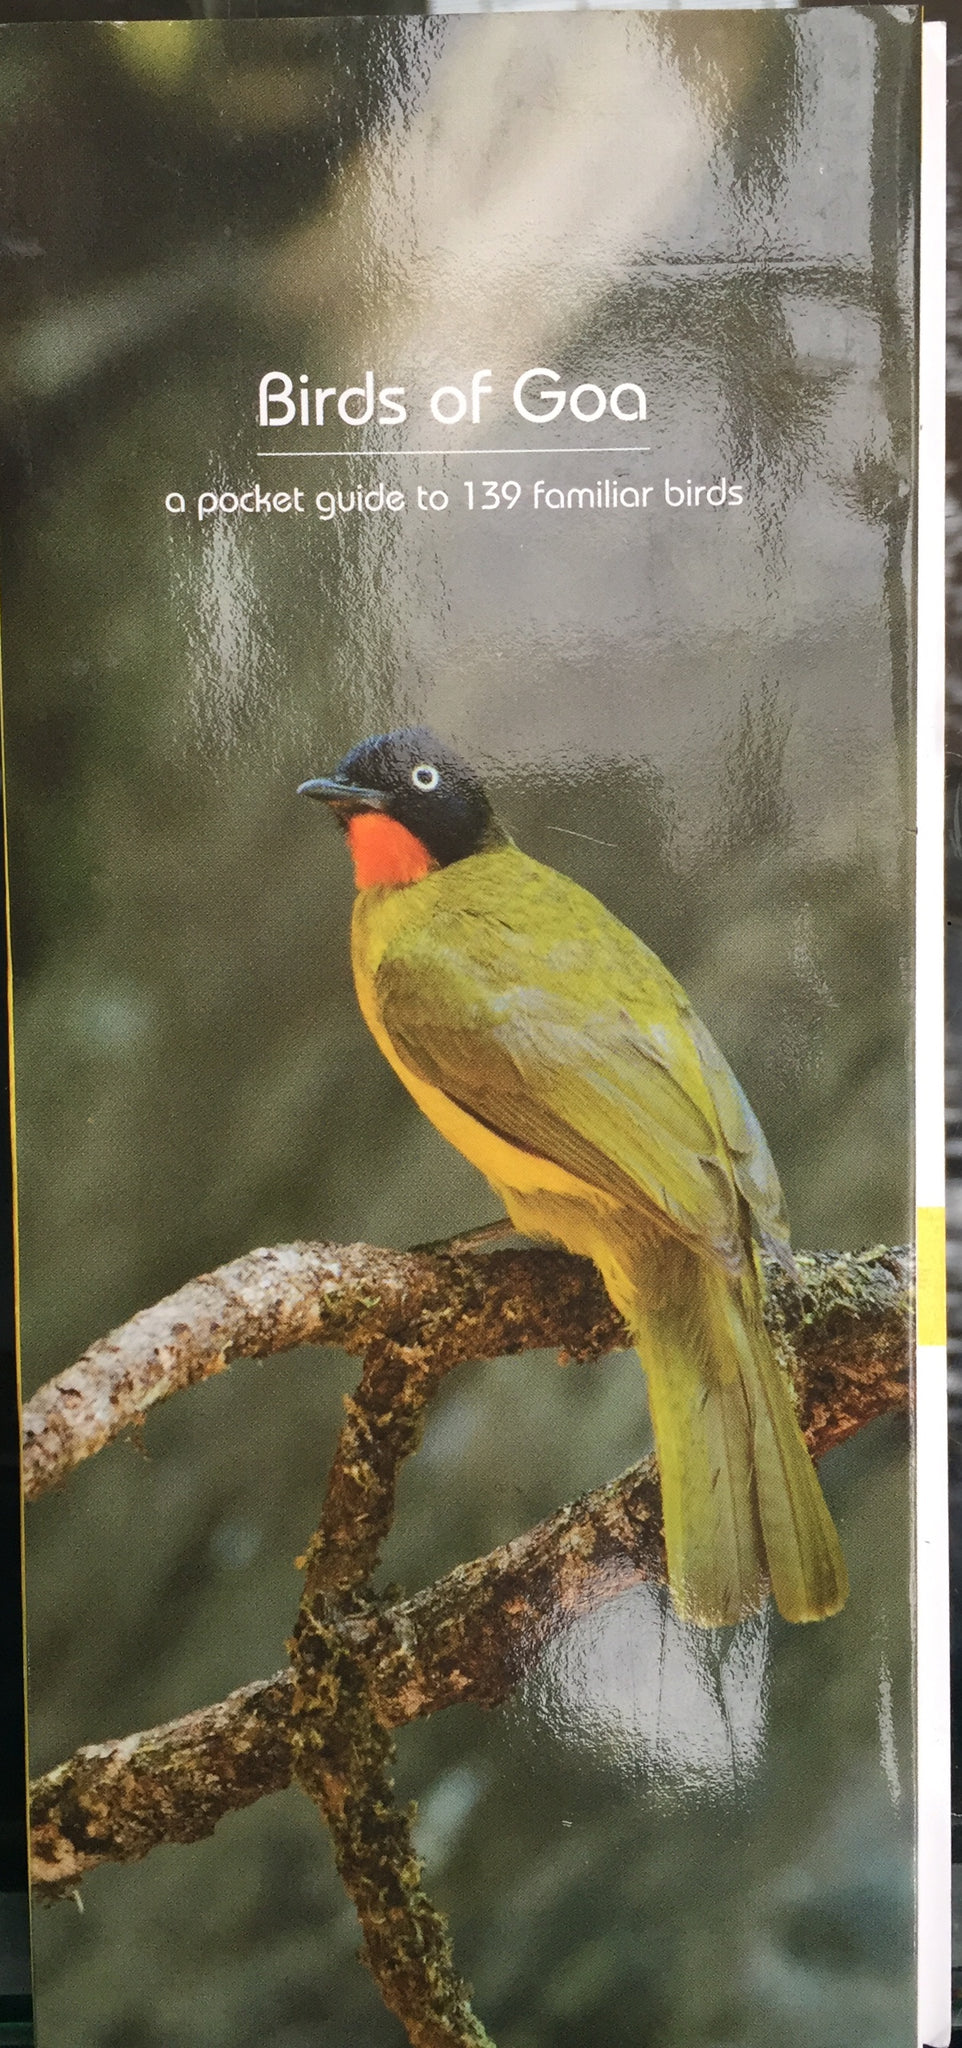 Birds of Goa: a pocket guide to 139 familiar birds